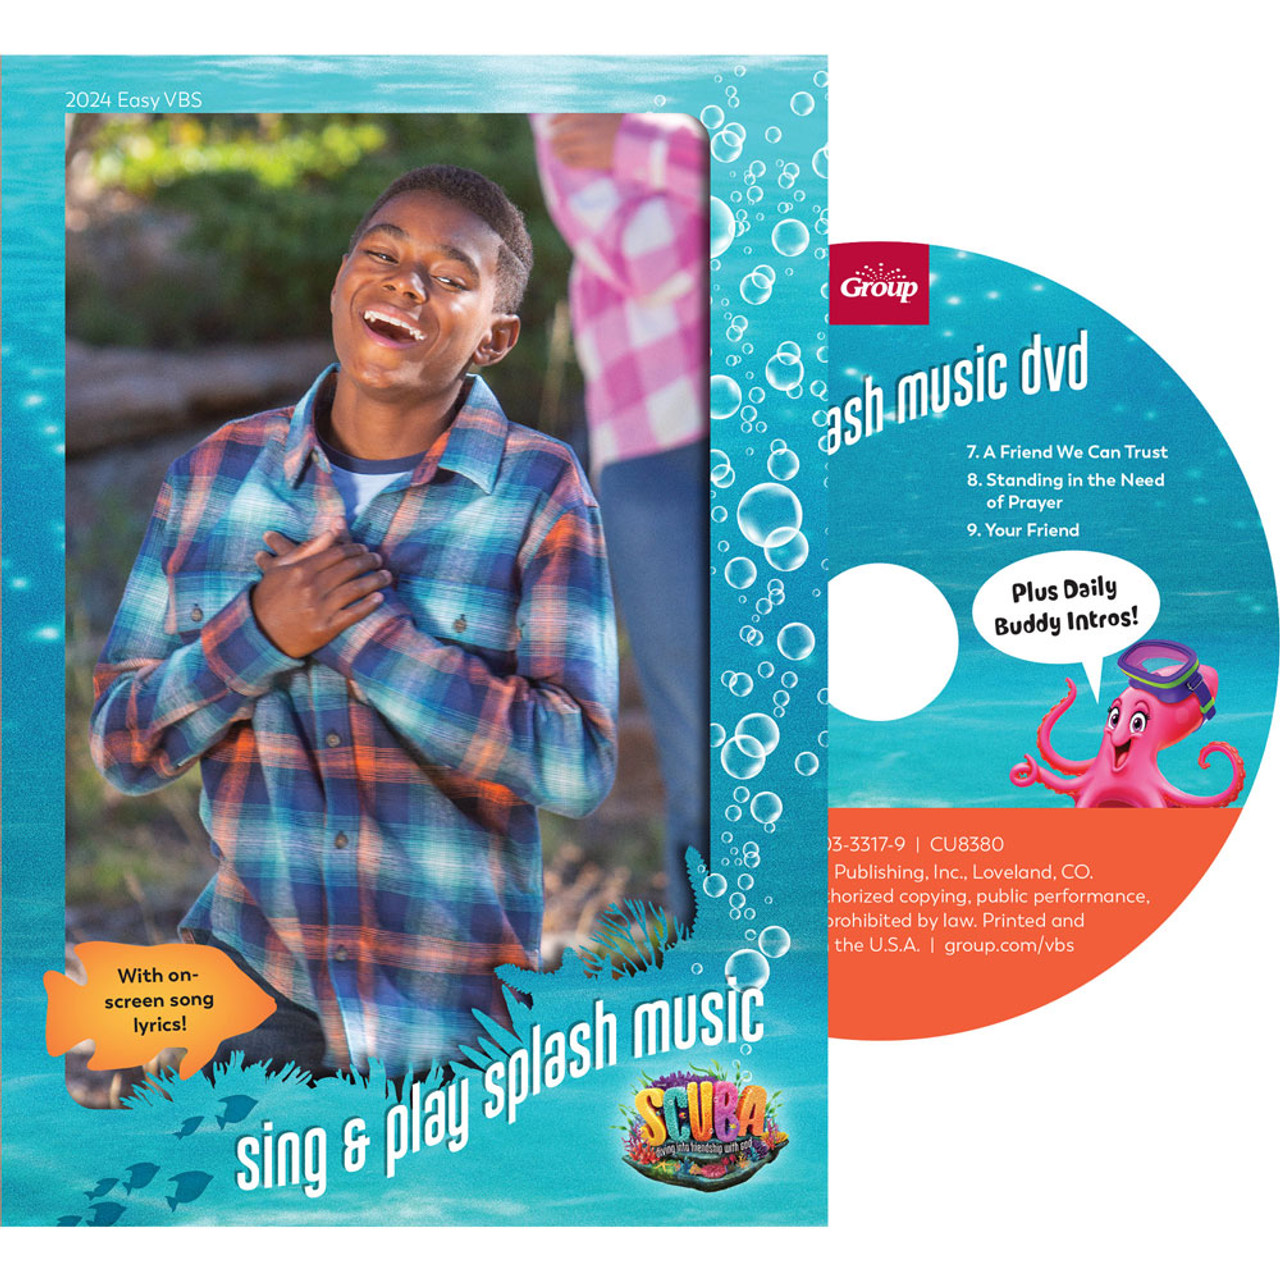 Sing u0026 Play Splash Music DVD - Scuba VBS 2024 by Group